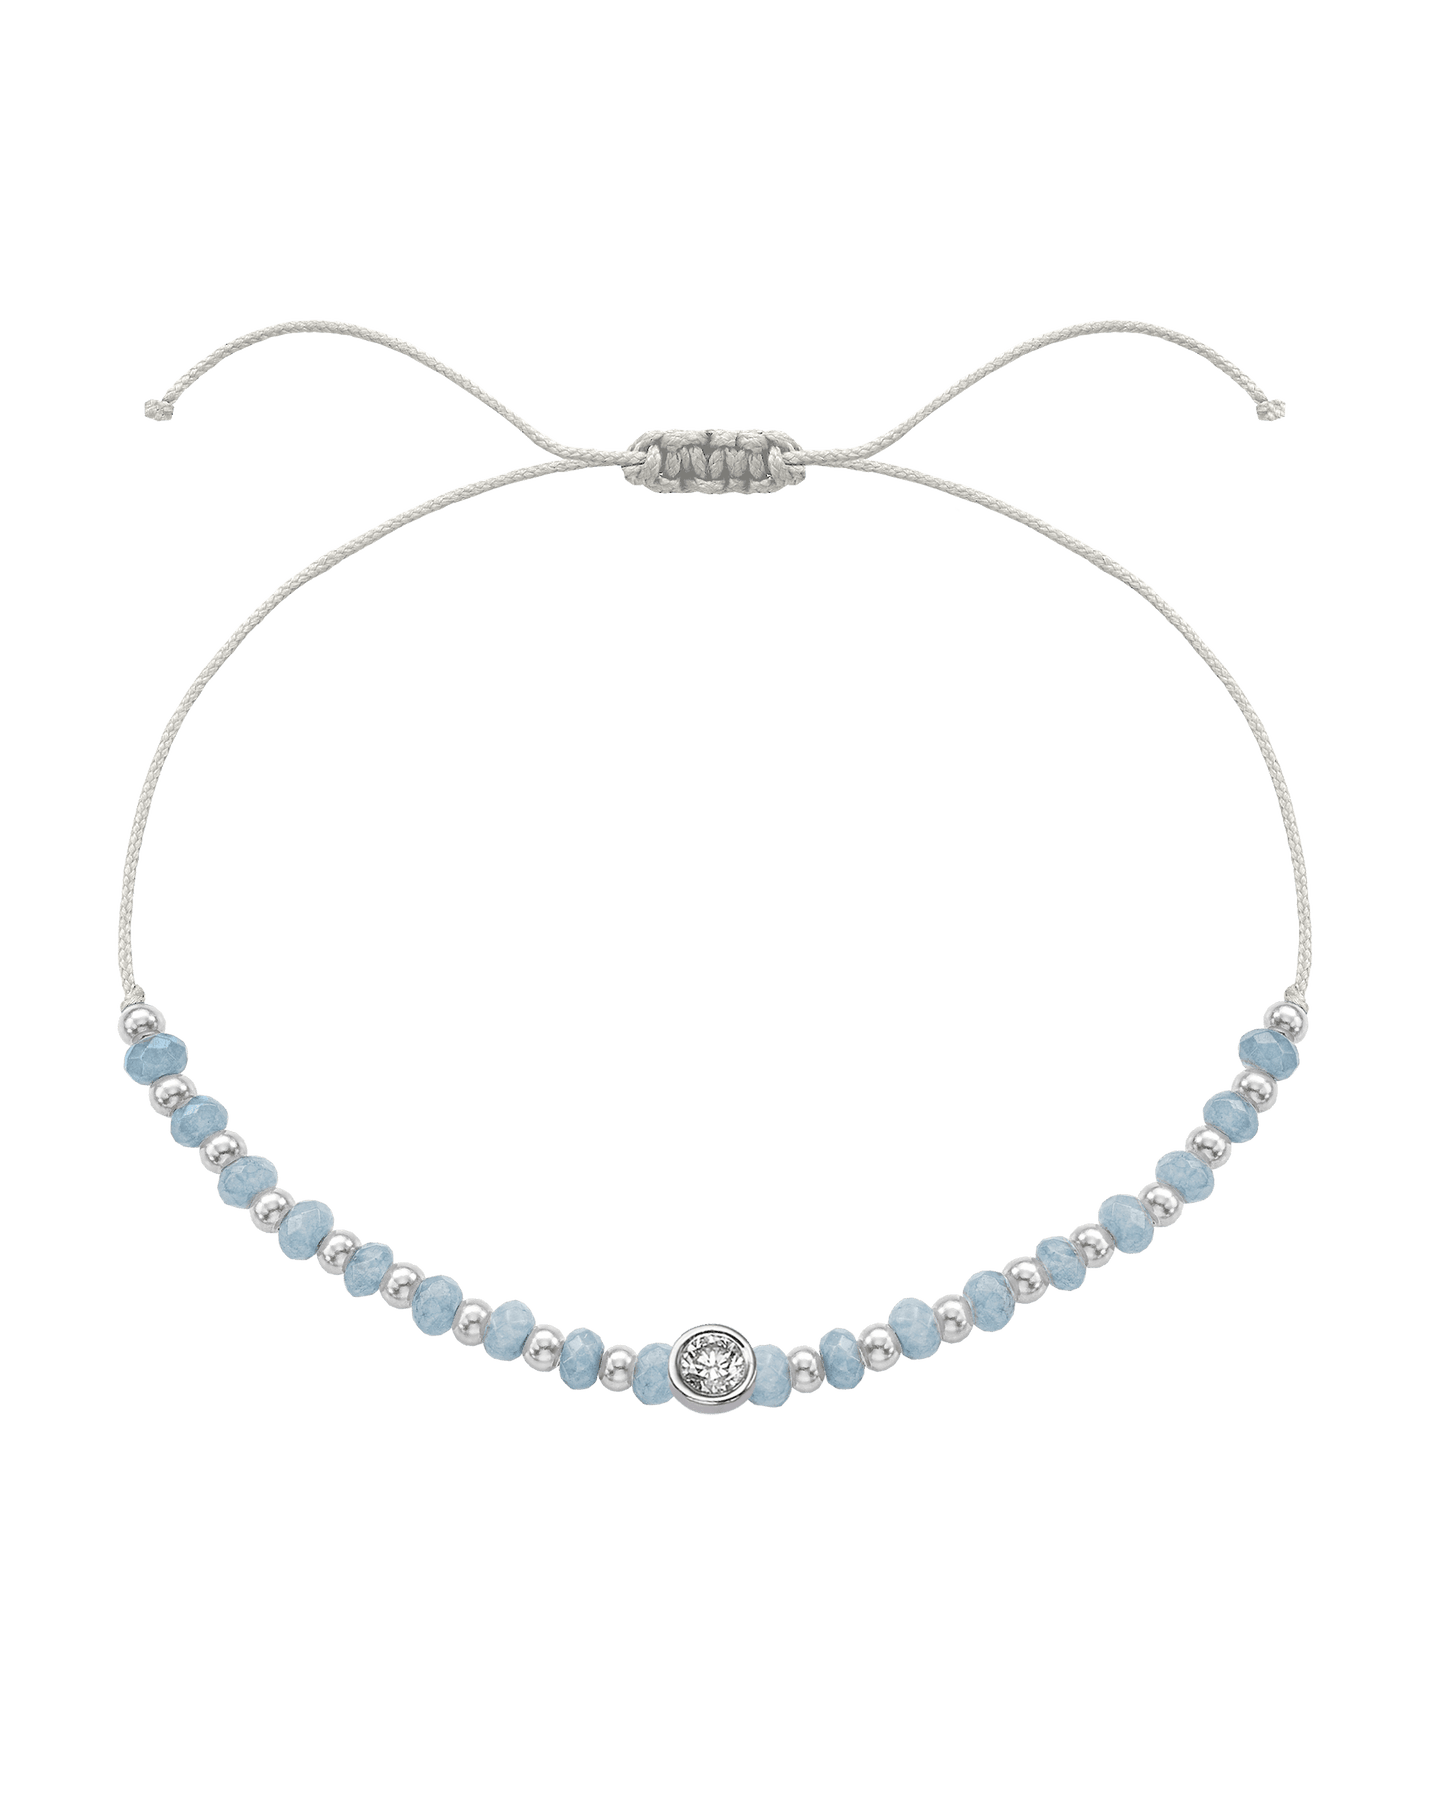 Celestite Gemstone String of Love Bracelet for Mindfulness - 14K White Gold Bracelets 14K Solid Gold Pearl Large: 0.1ct 